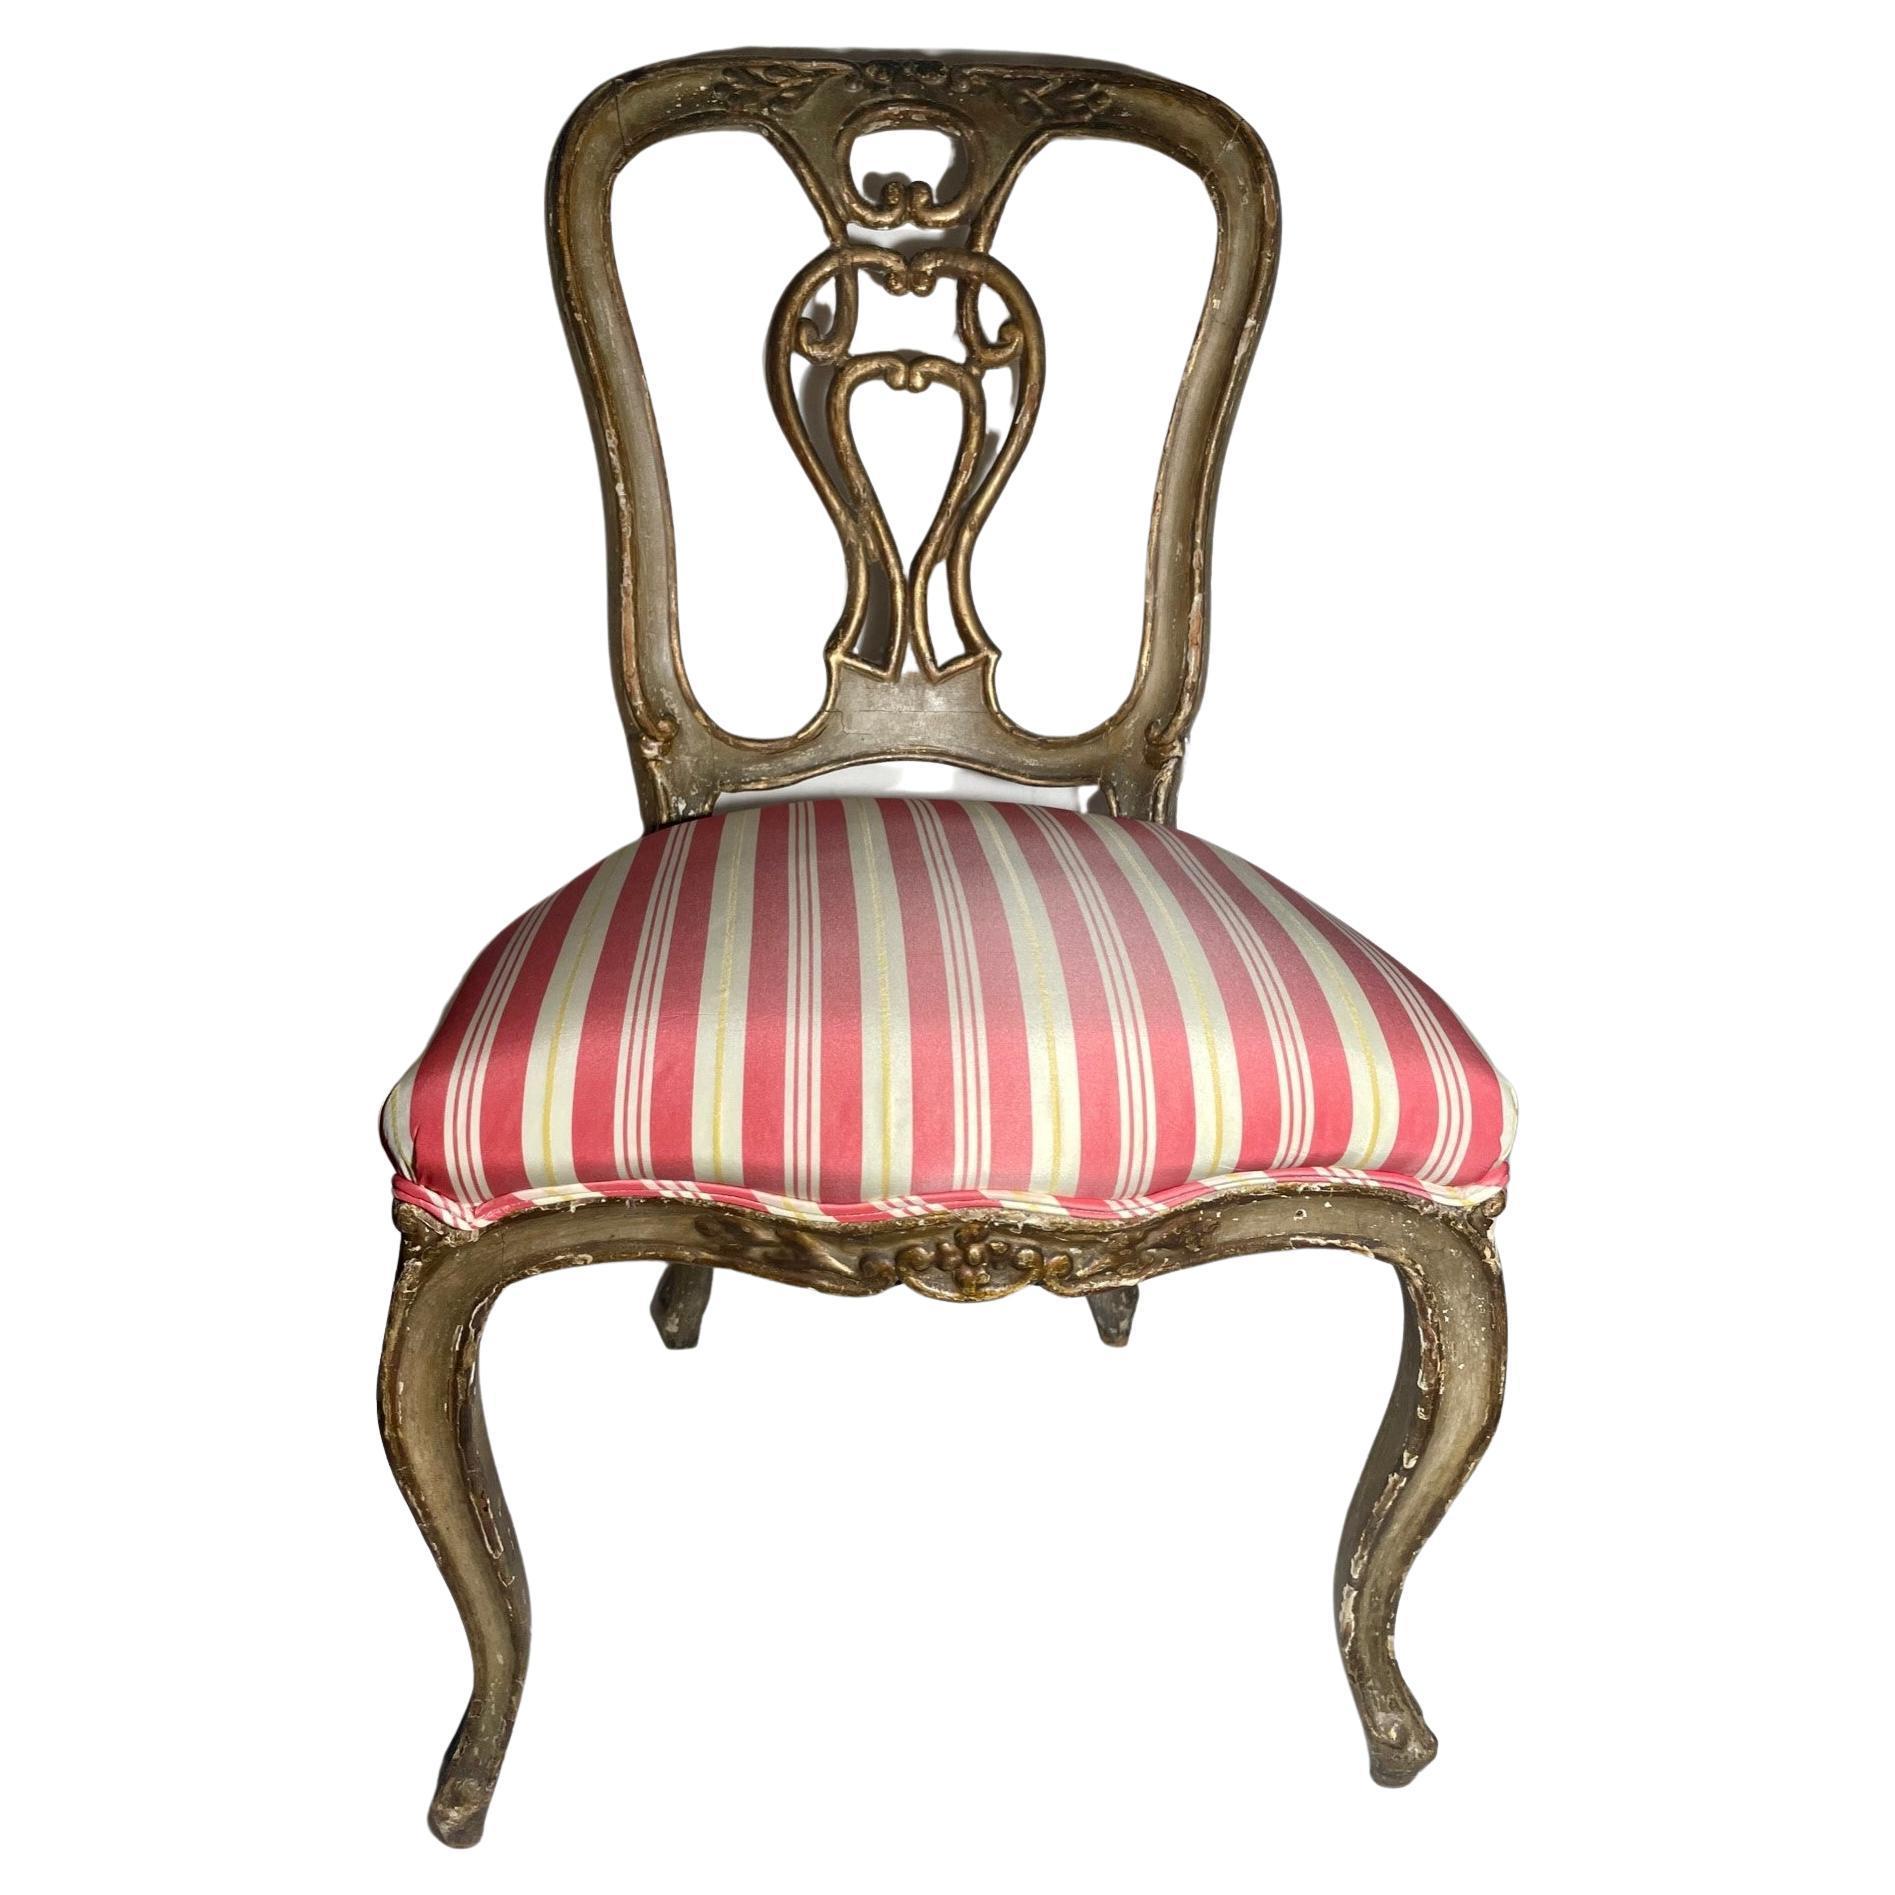 Schöner antiker Stuhl aus dem 18. Jahrhundert im venezianischen Rokoko mit Polychromie und Vergoldung

Wunderschöner grüner und vergoldeter venezianischer Beistellstuhl aus geschnitztem Holz. Dieser Rokokostuhl ist polychrom bemalt und mit